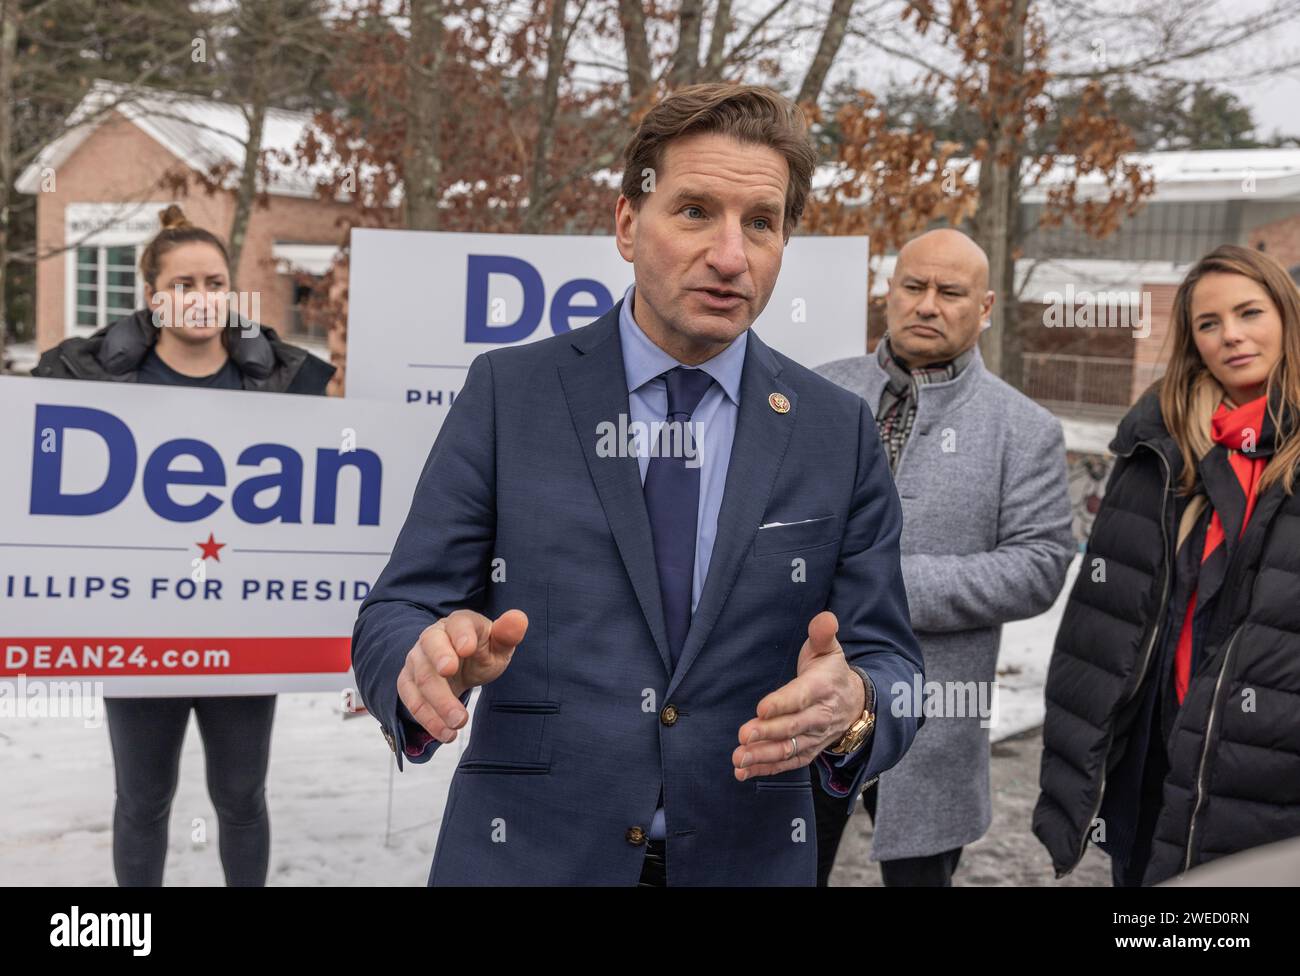 NASHUA, N.H. – 23 gennaio 2024: Campagna elettorale del candidato presidenziale democratico Dean Phillips nel giorno delle elezioni primarie del New Hampshire. Foto Stock